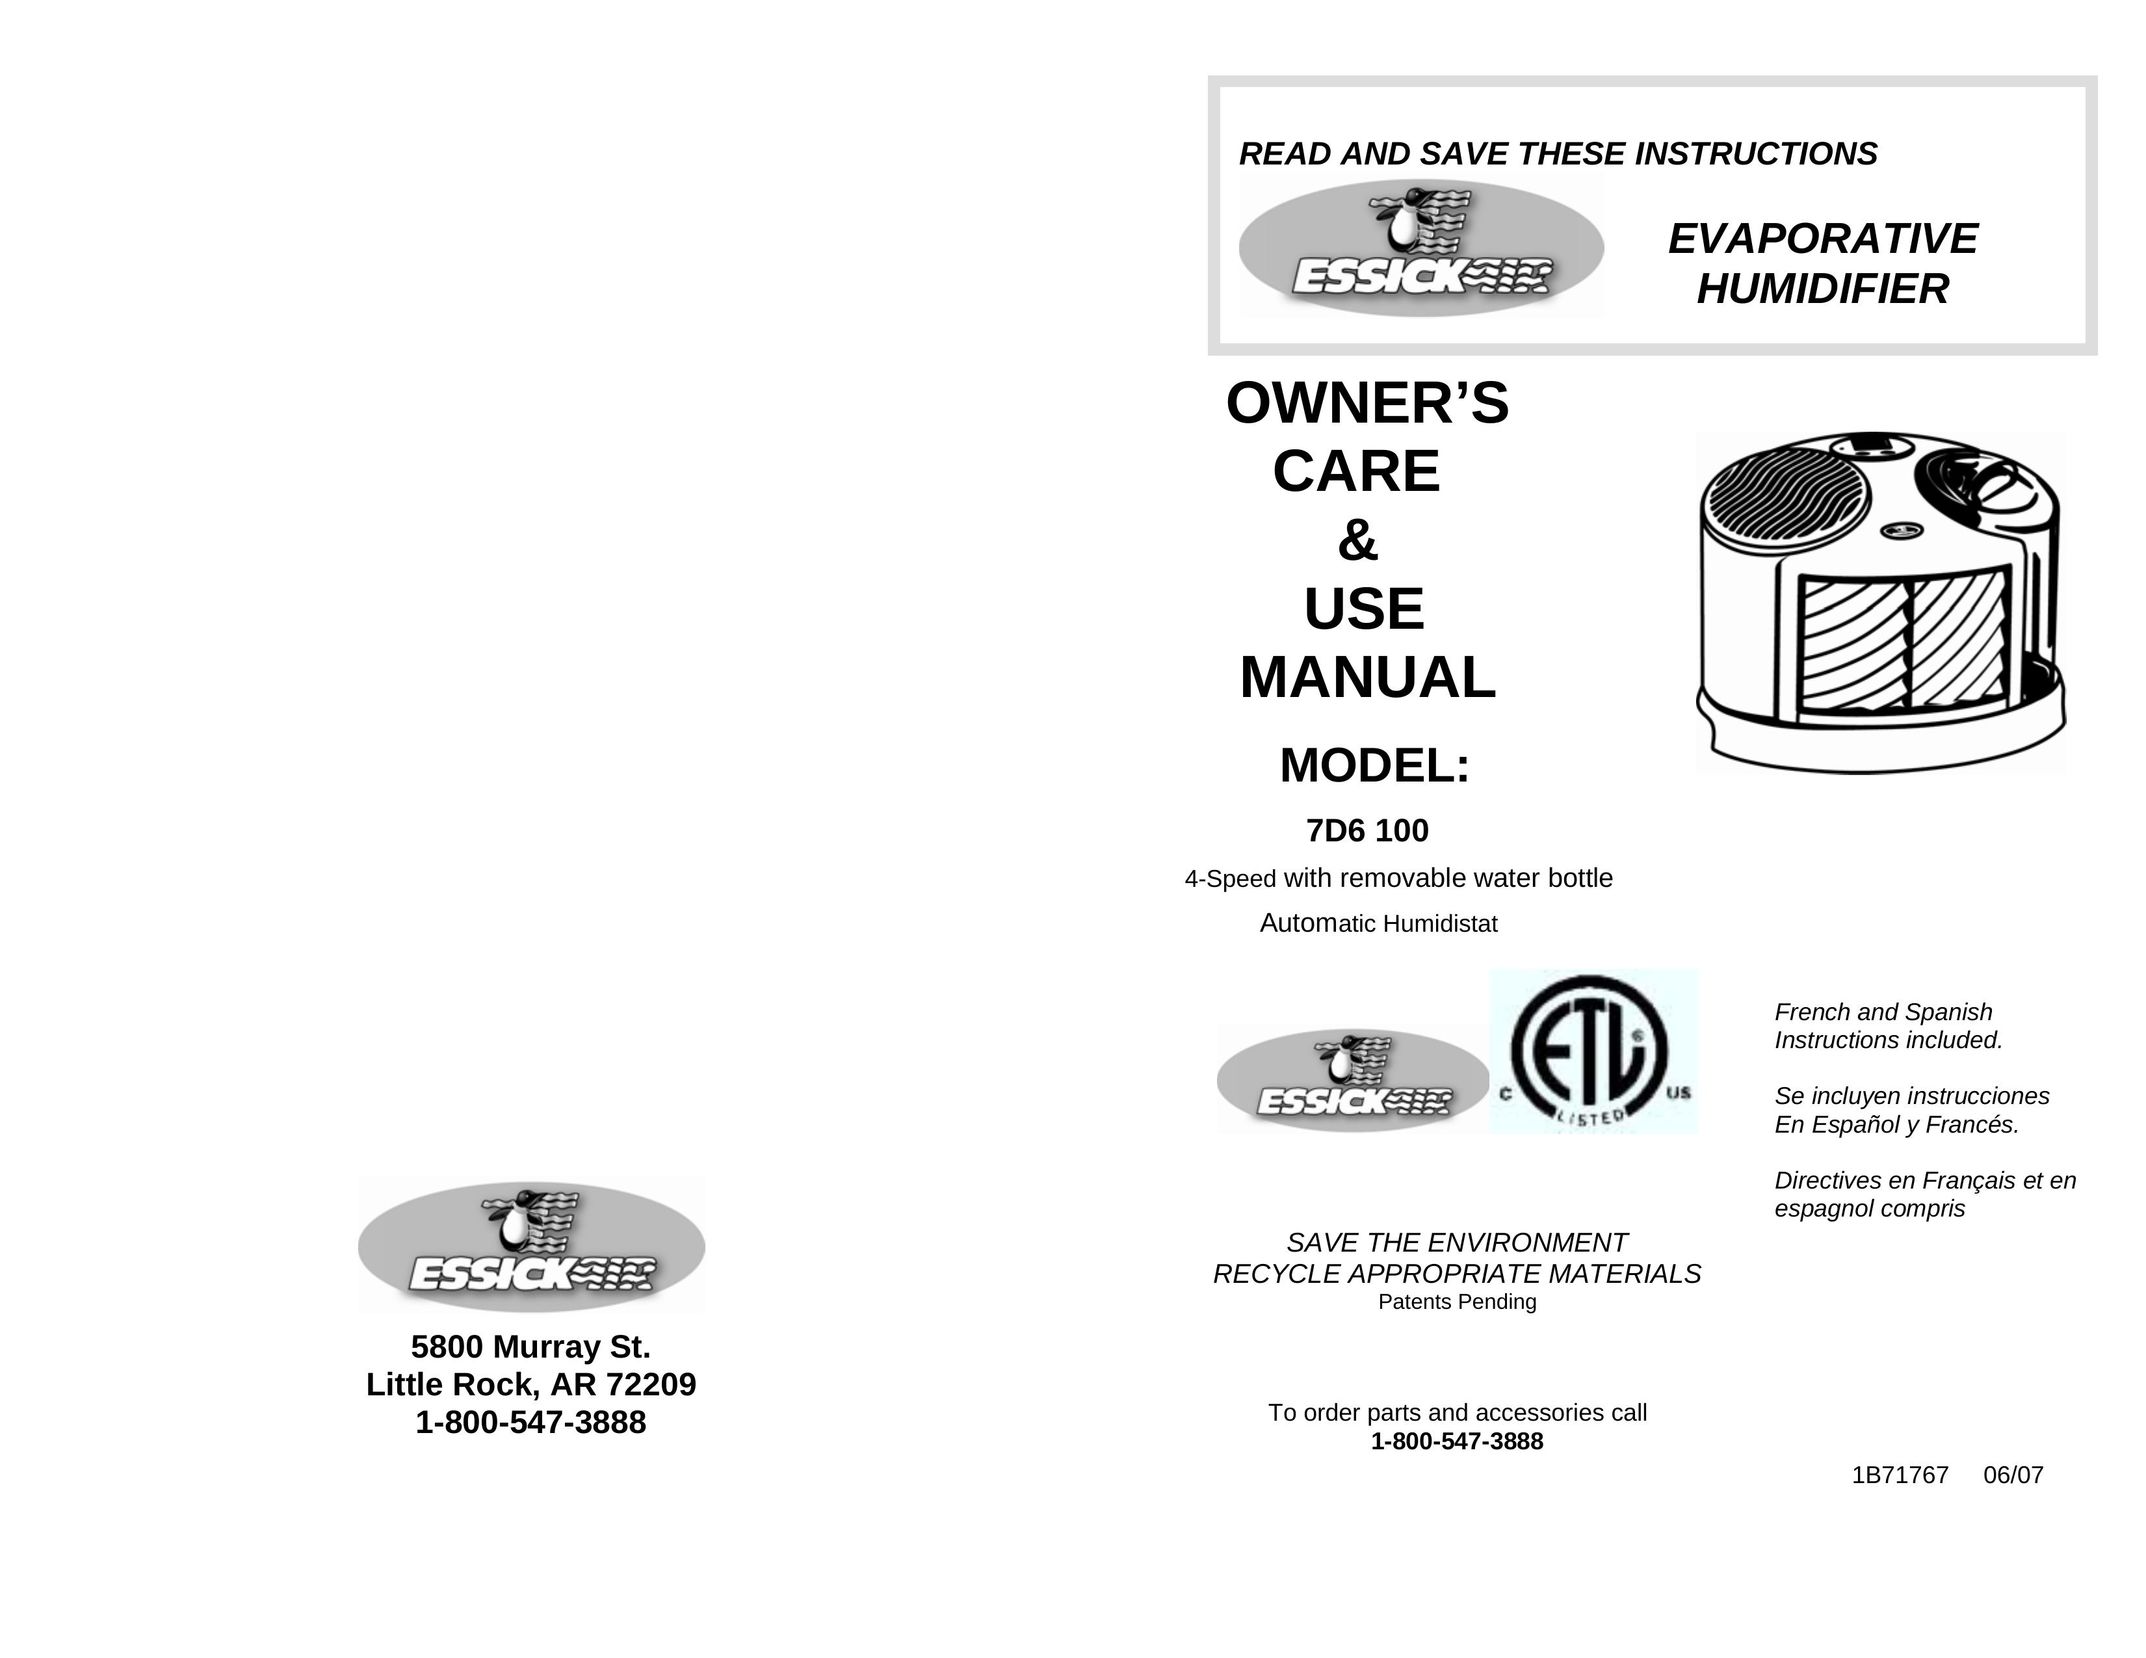 DKNY 7D6 100 Humidifier User Manual